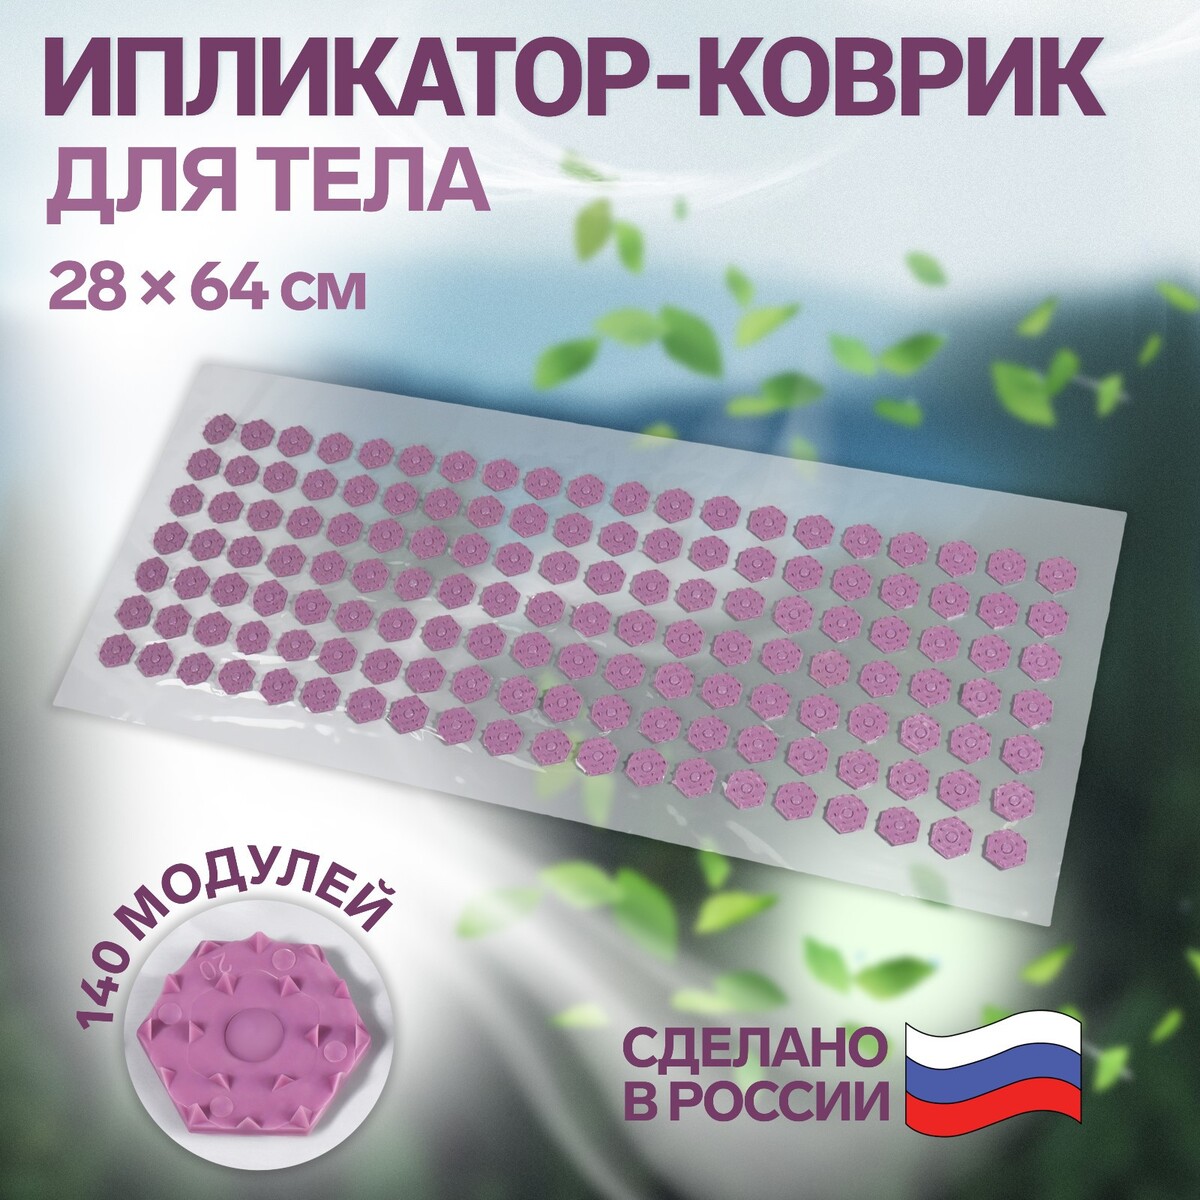 Ипликатор-коврик, основа пвх, 140 модулей, 28 × 64 см, цвет прозрачный/фиолетовый kett up коврик напольный прозрачный 120х90 см